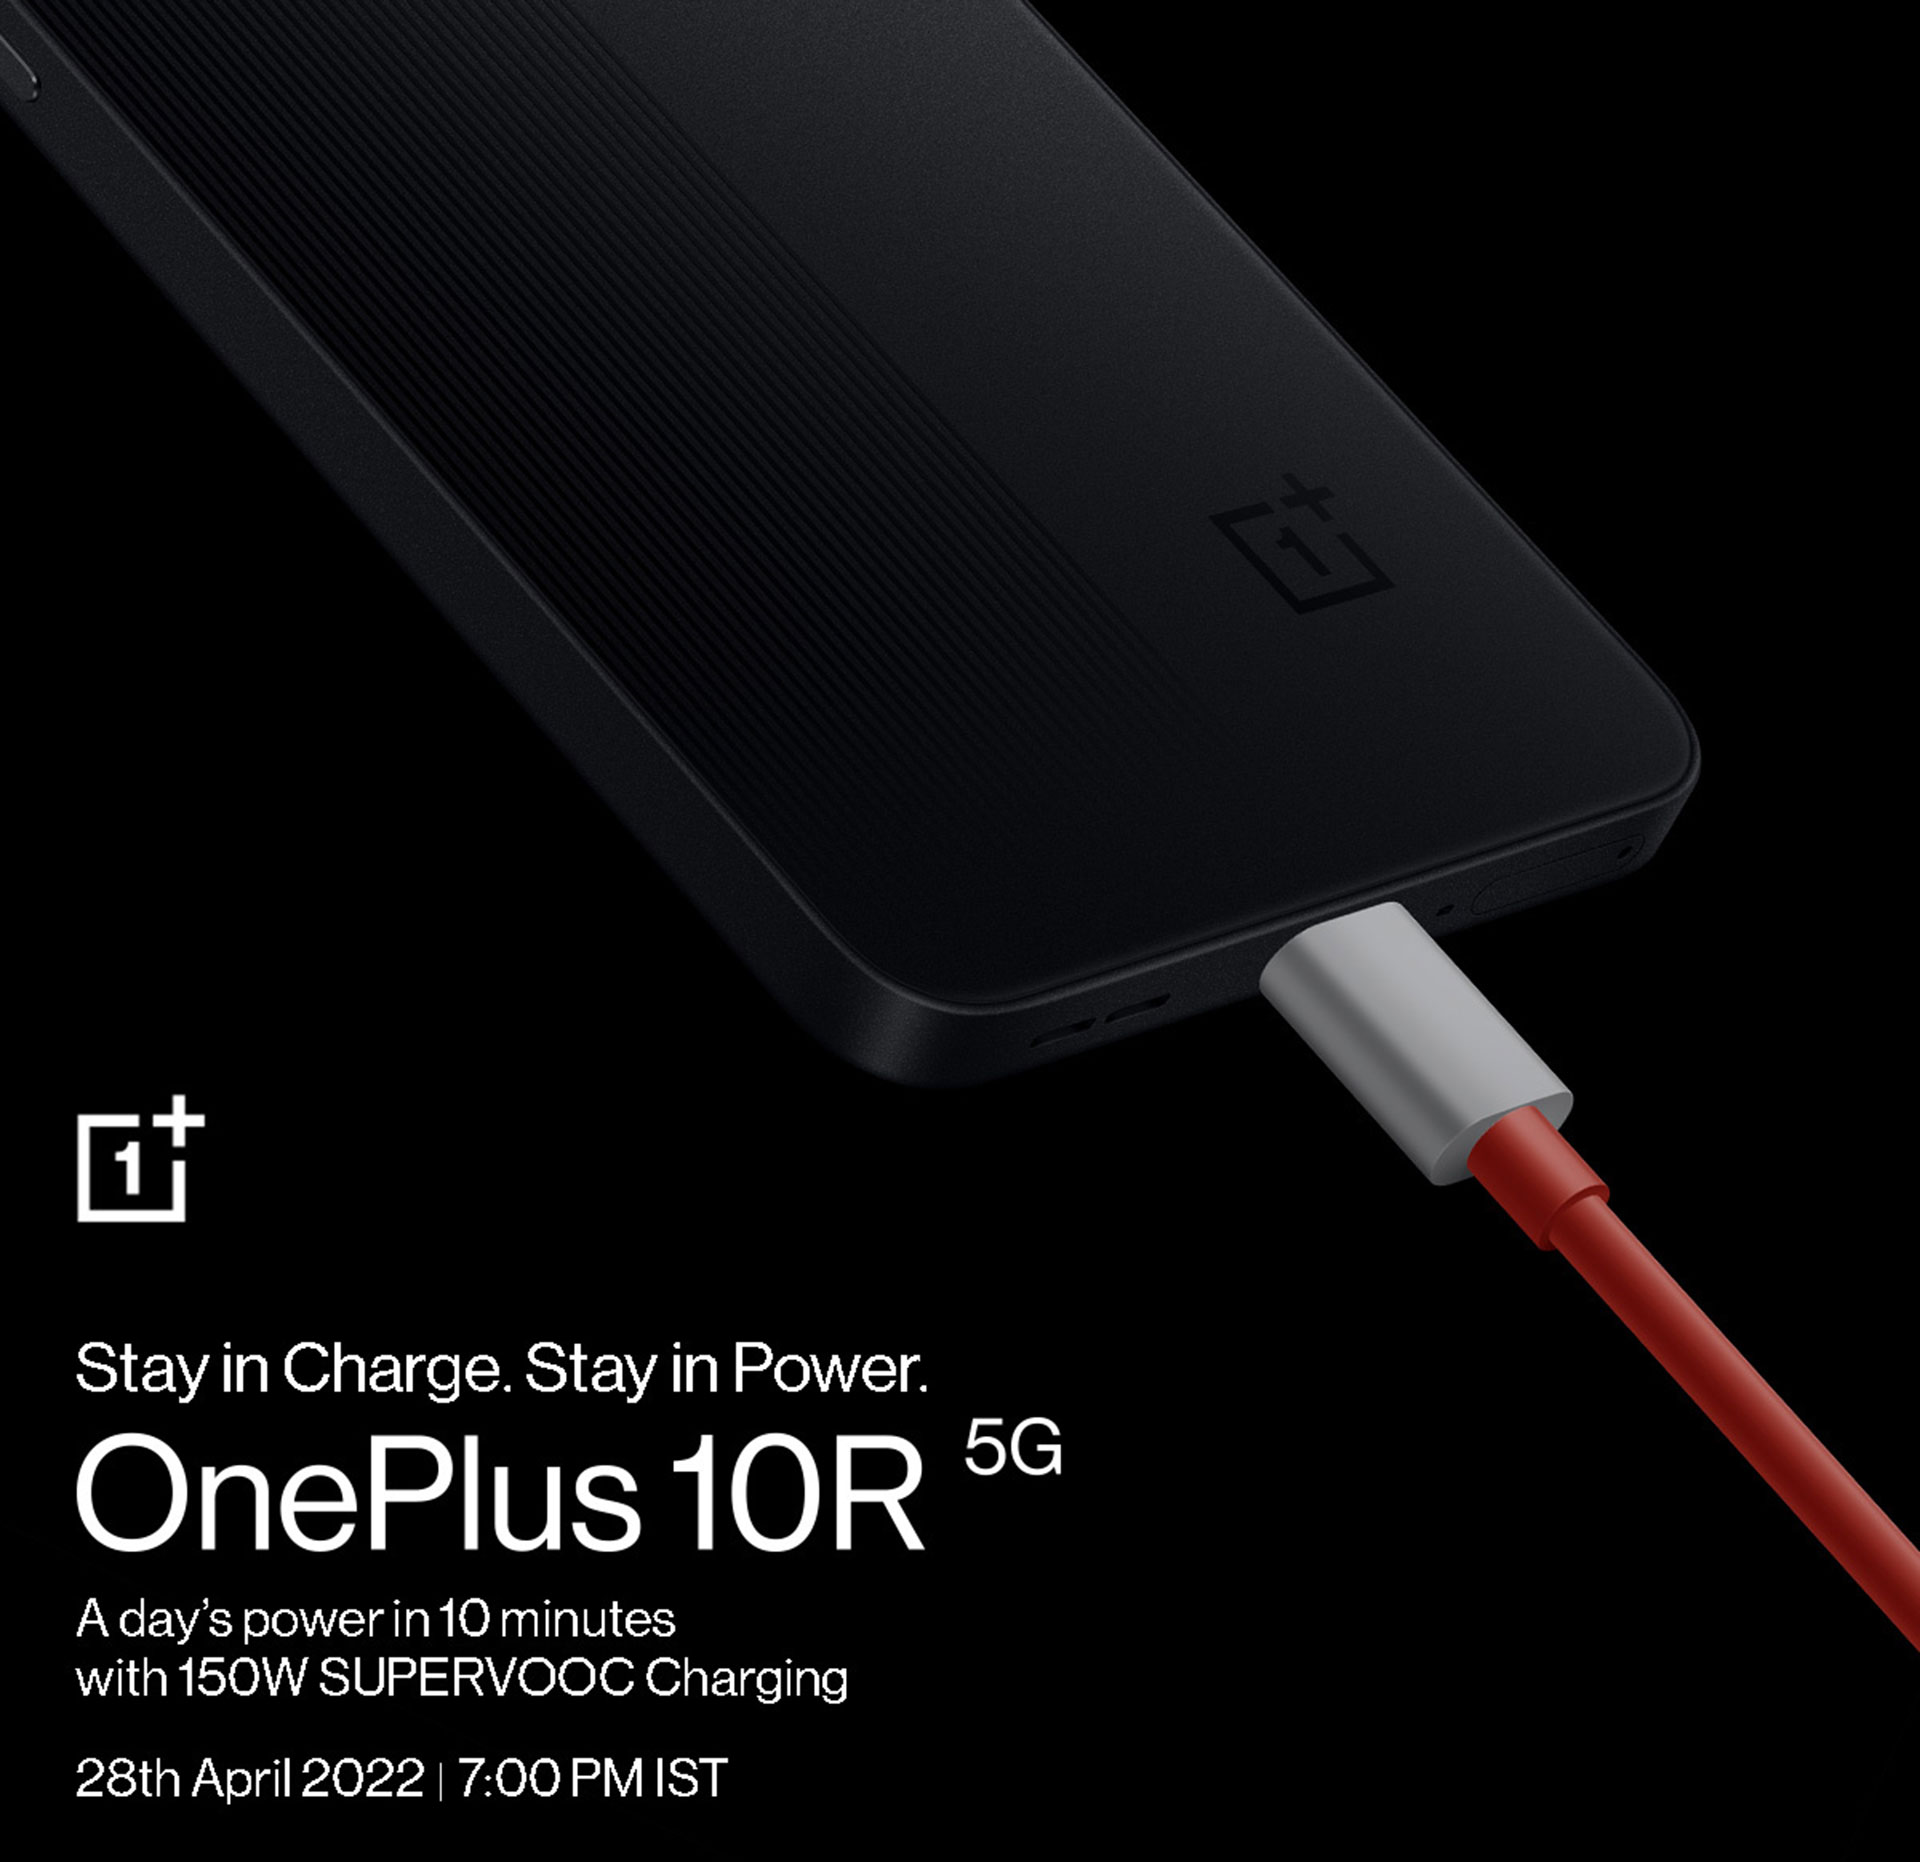 معرفی قدرت شارژ OnePlus 10R 5G در پوستر تبلیغاتی آن